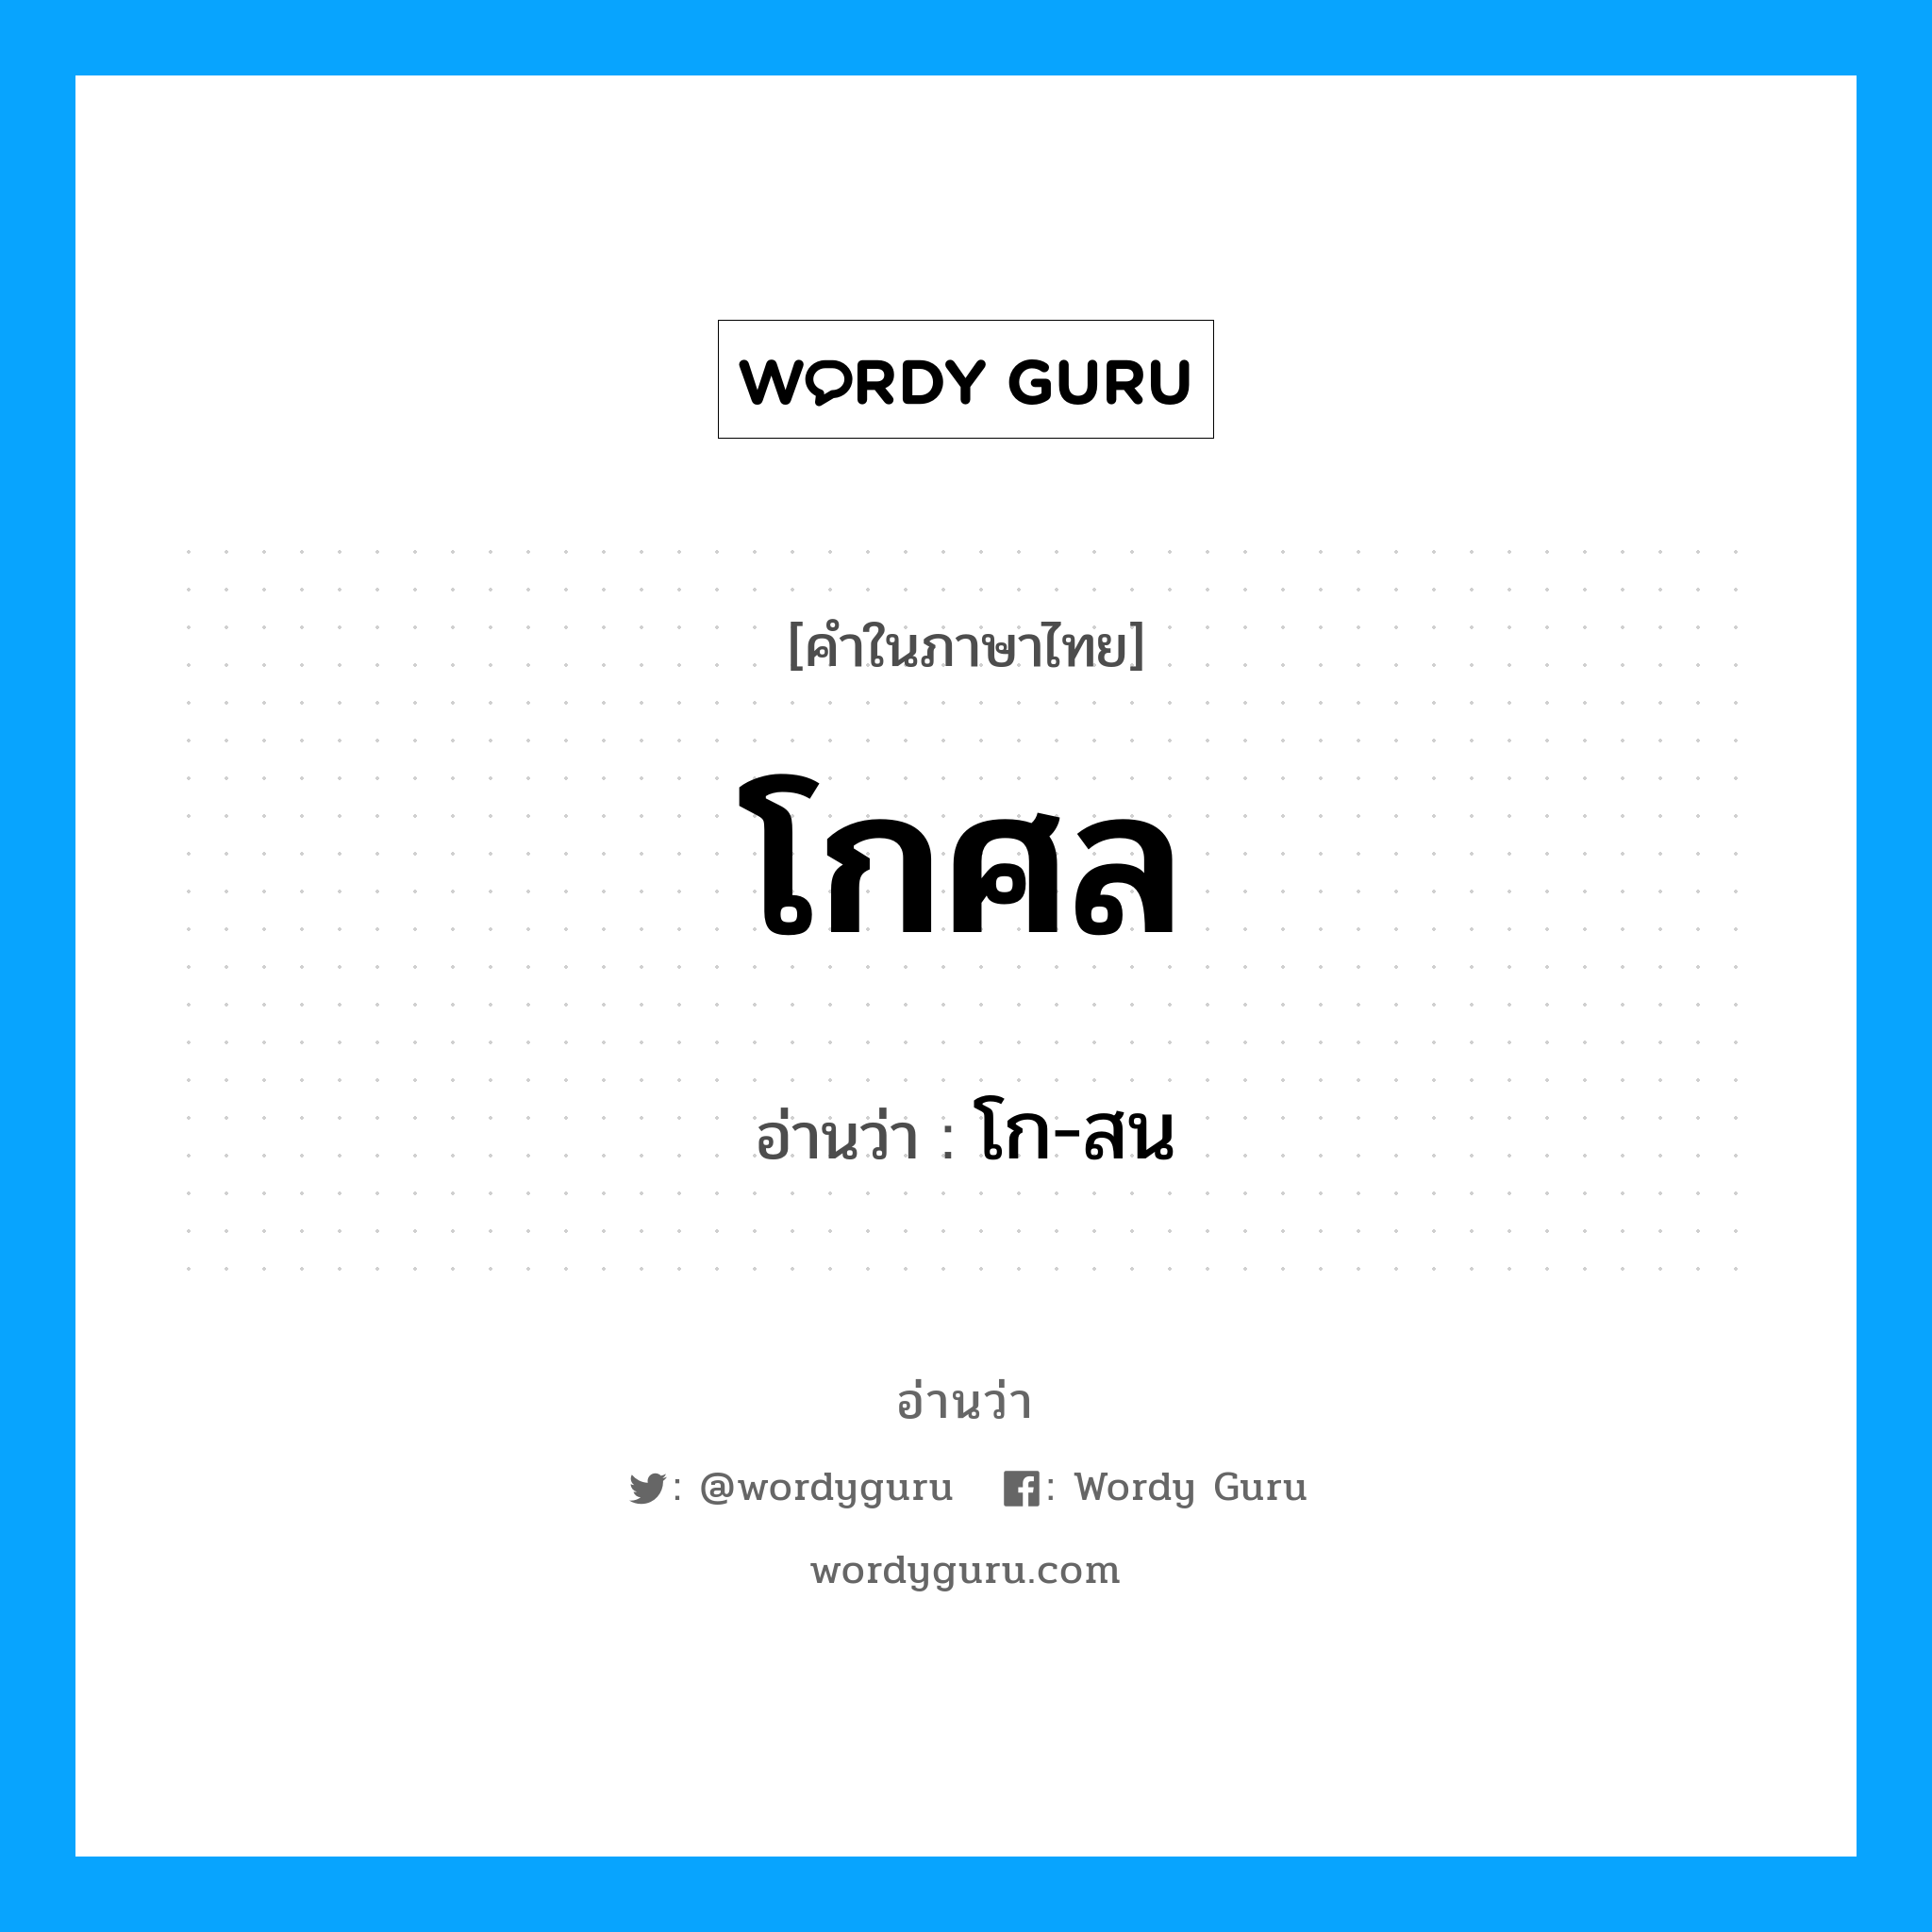 โก-สน เป็นคำอ่านของคำไหน?, คำในภาษาไทย โก-สน อ่านว่า โกศล